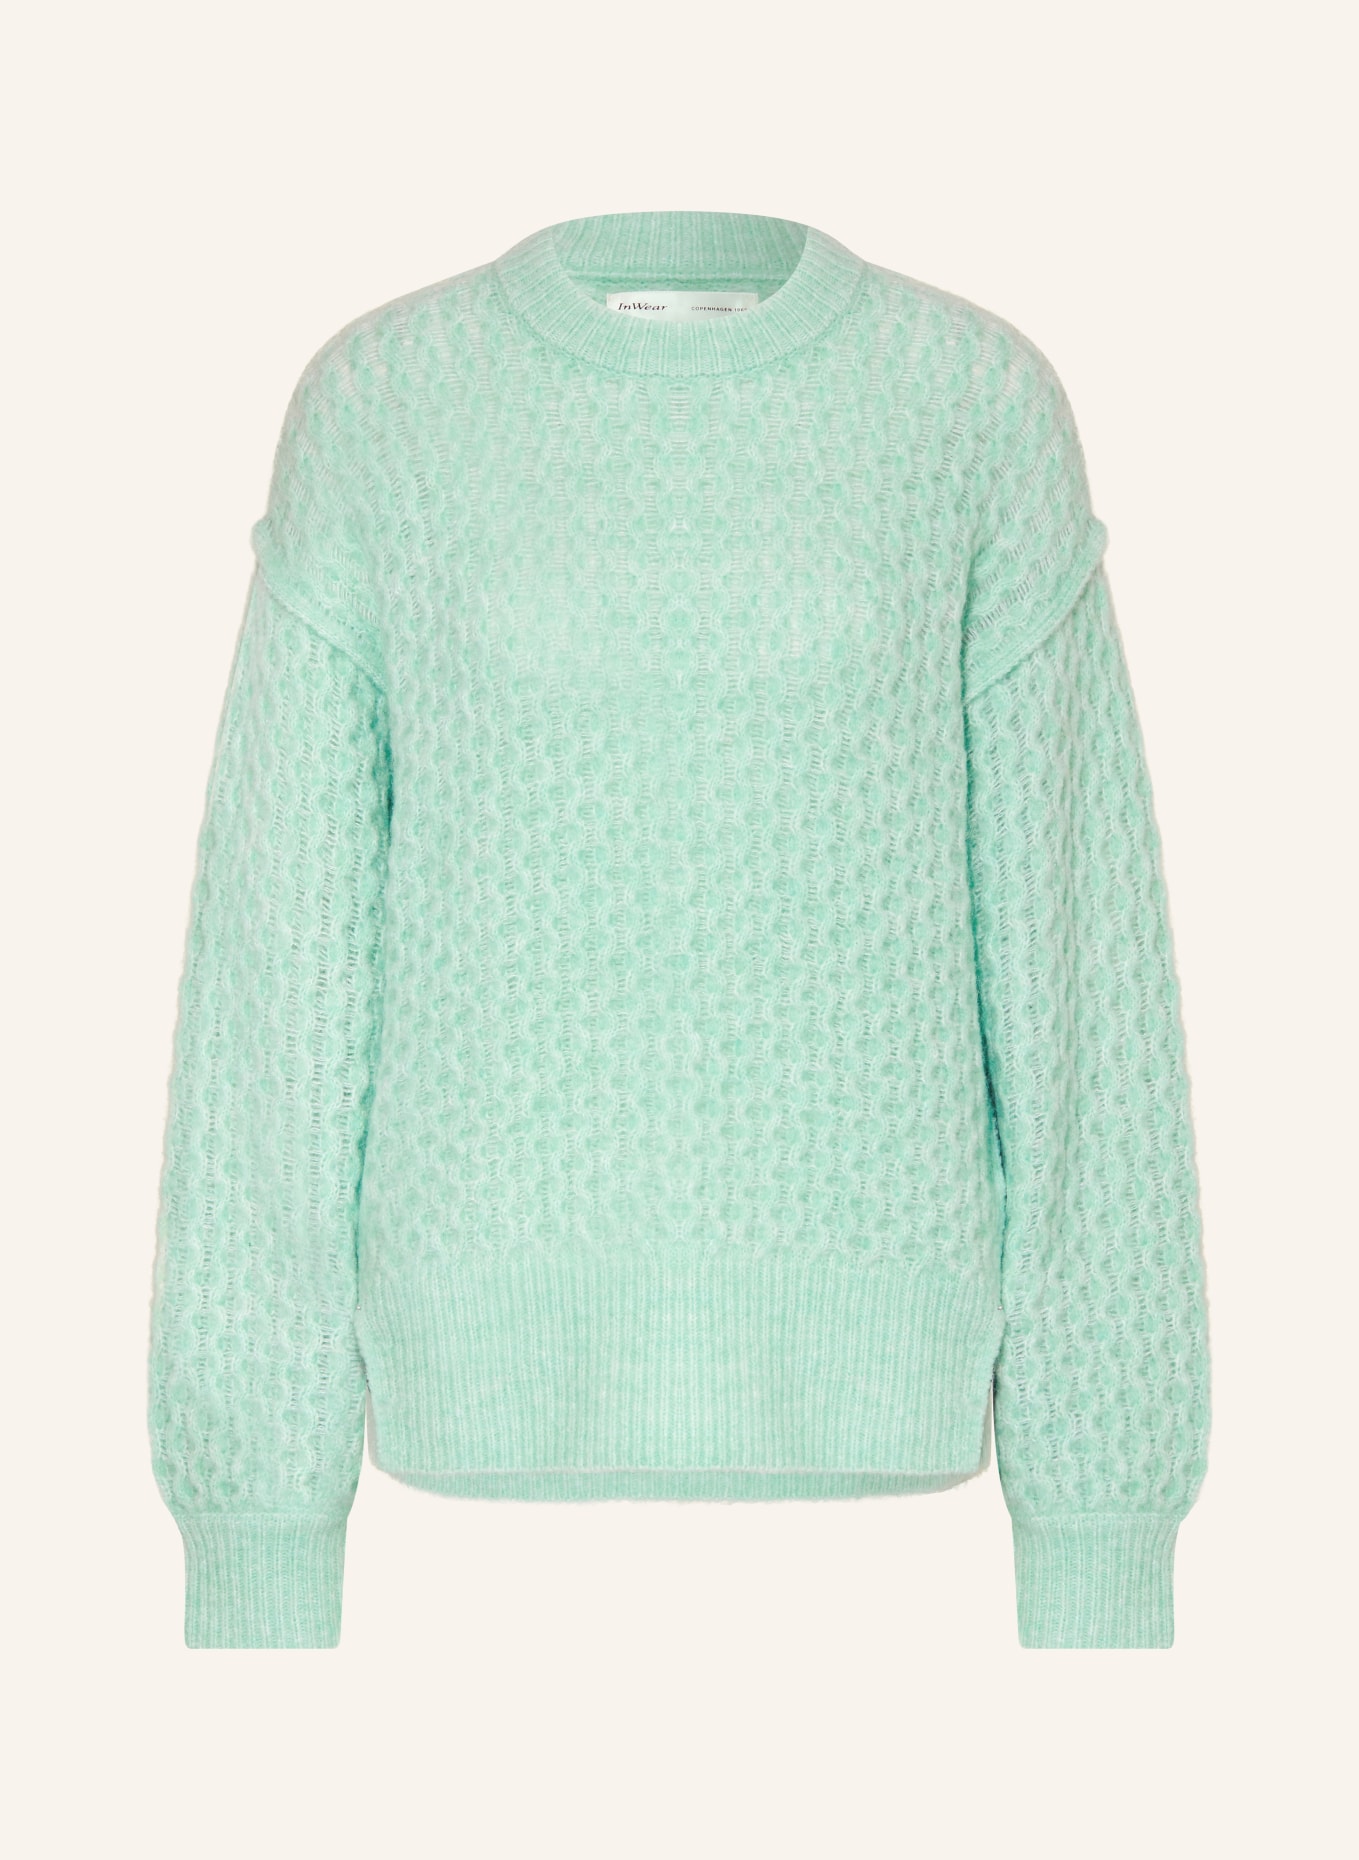 InWear Sweater OLISSEIW, Color: MINT (Image 1)